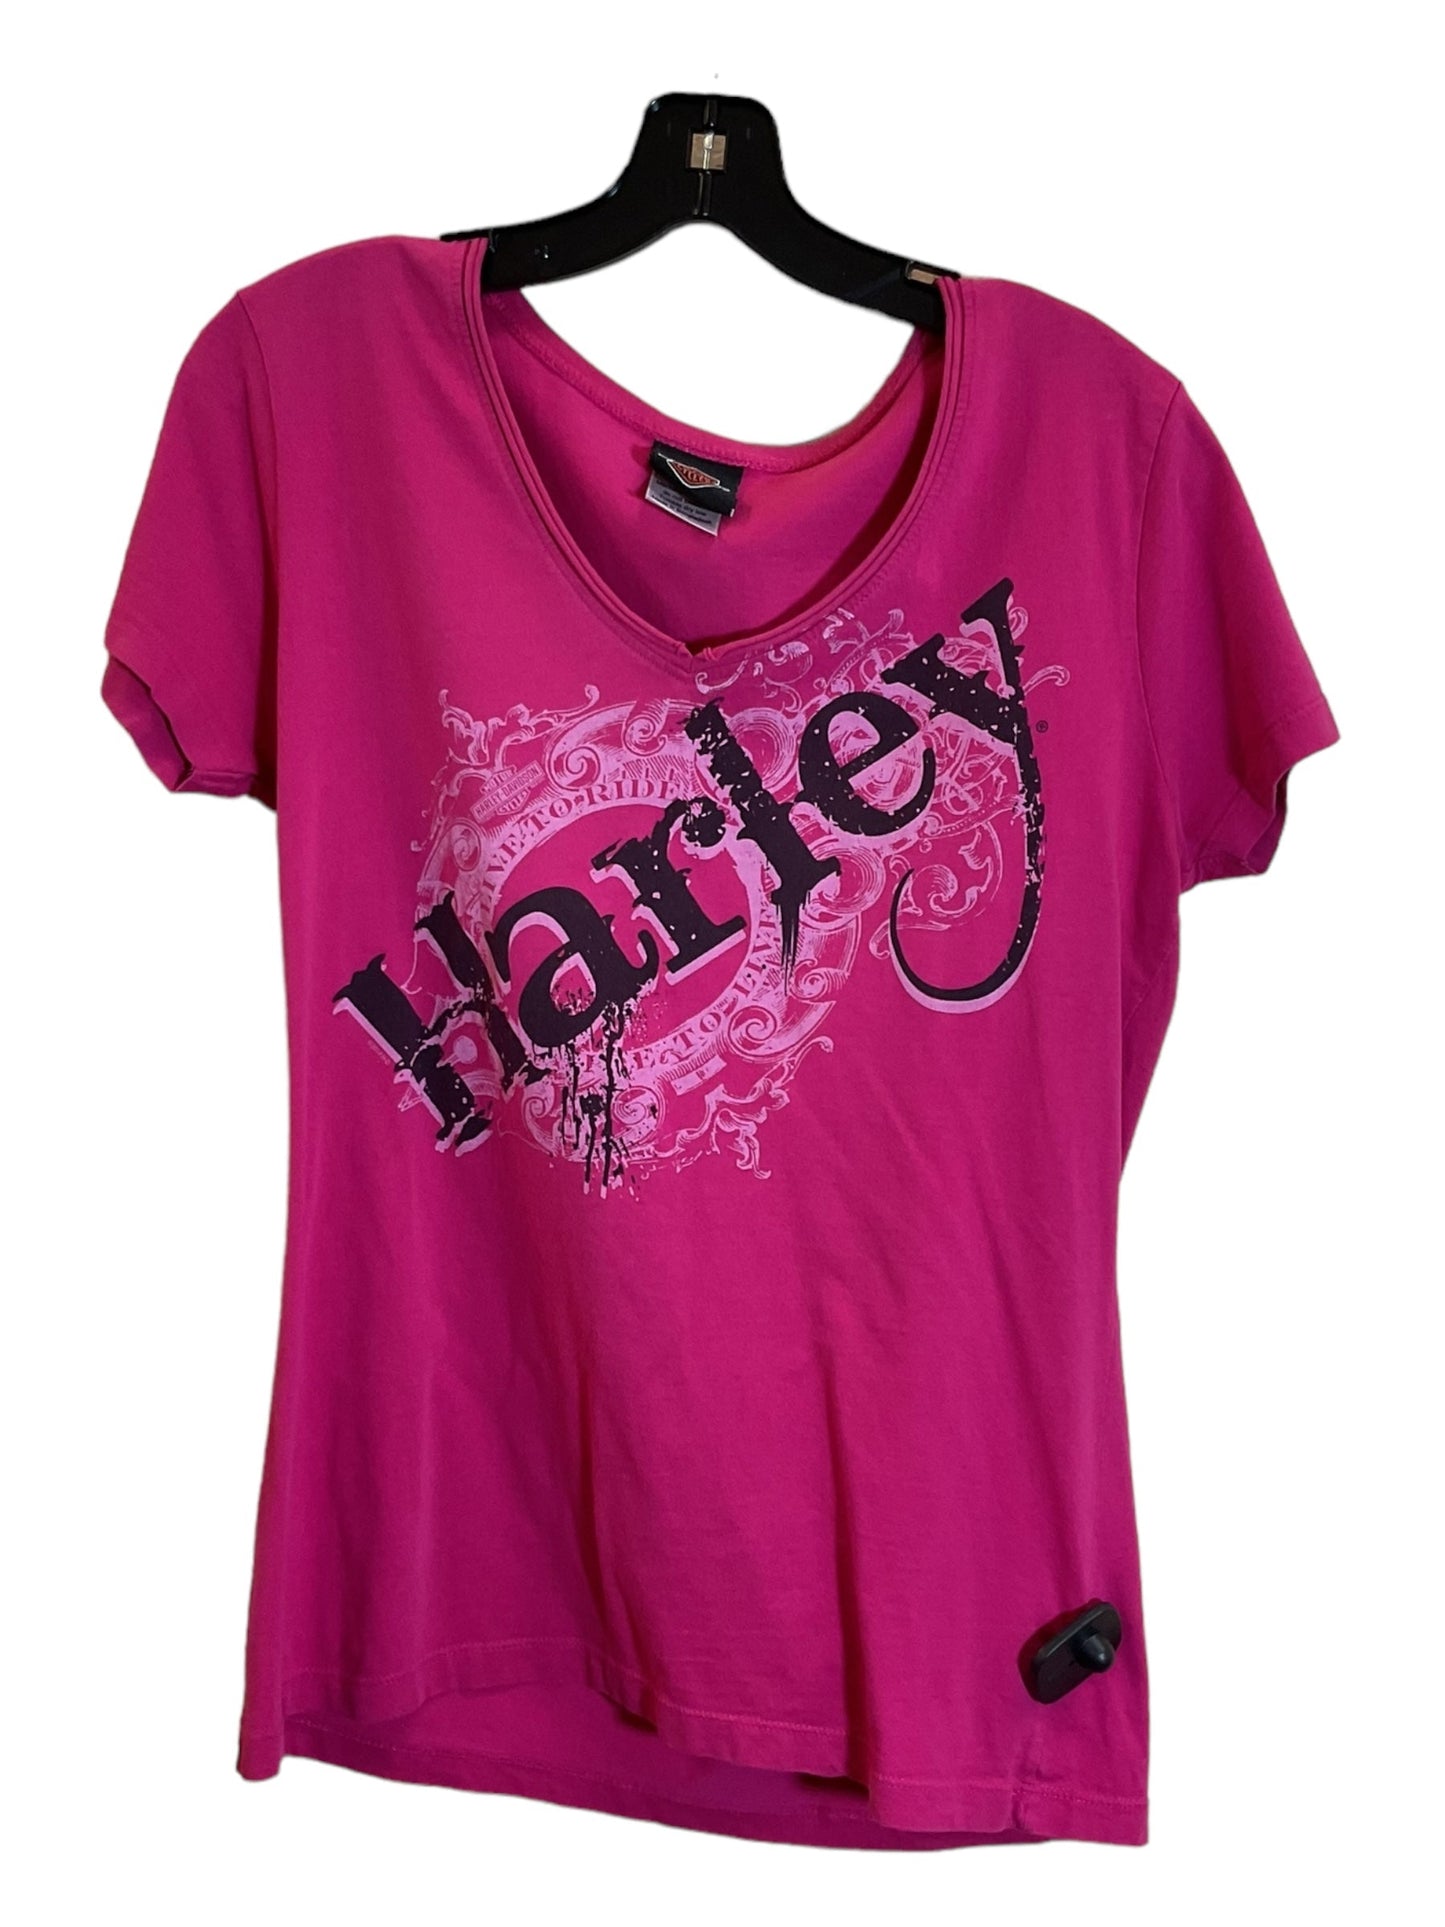 Pink Top Short Sleeve Harley Davidson, Size L